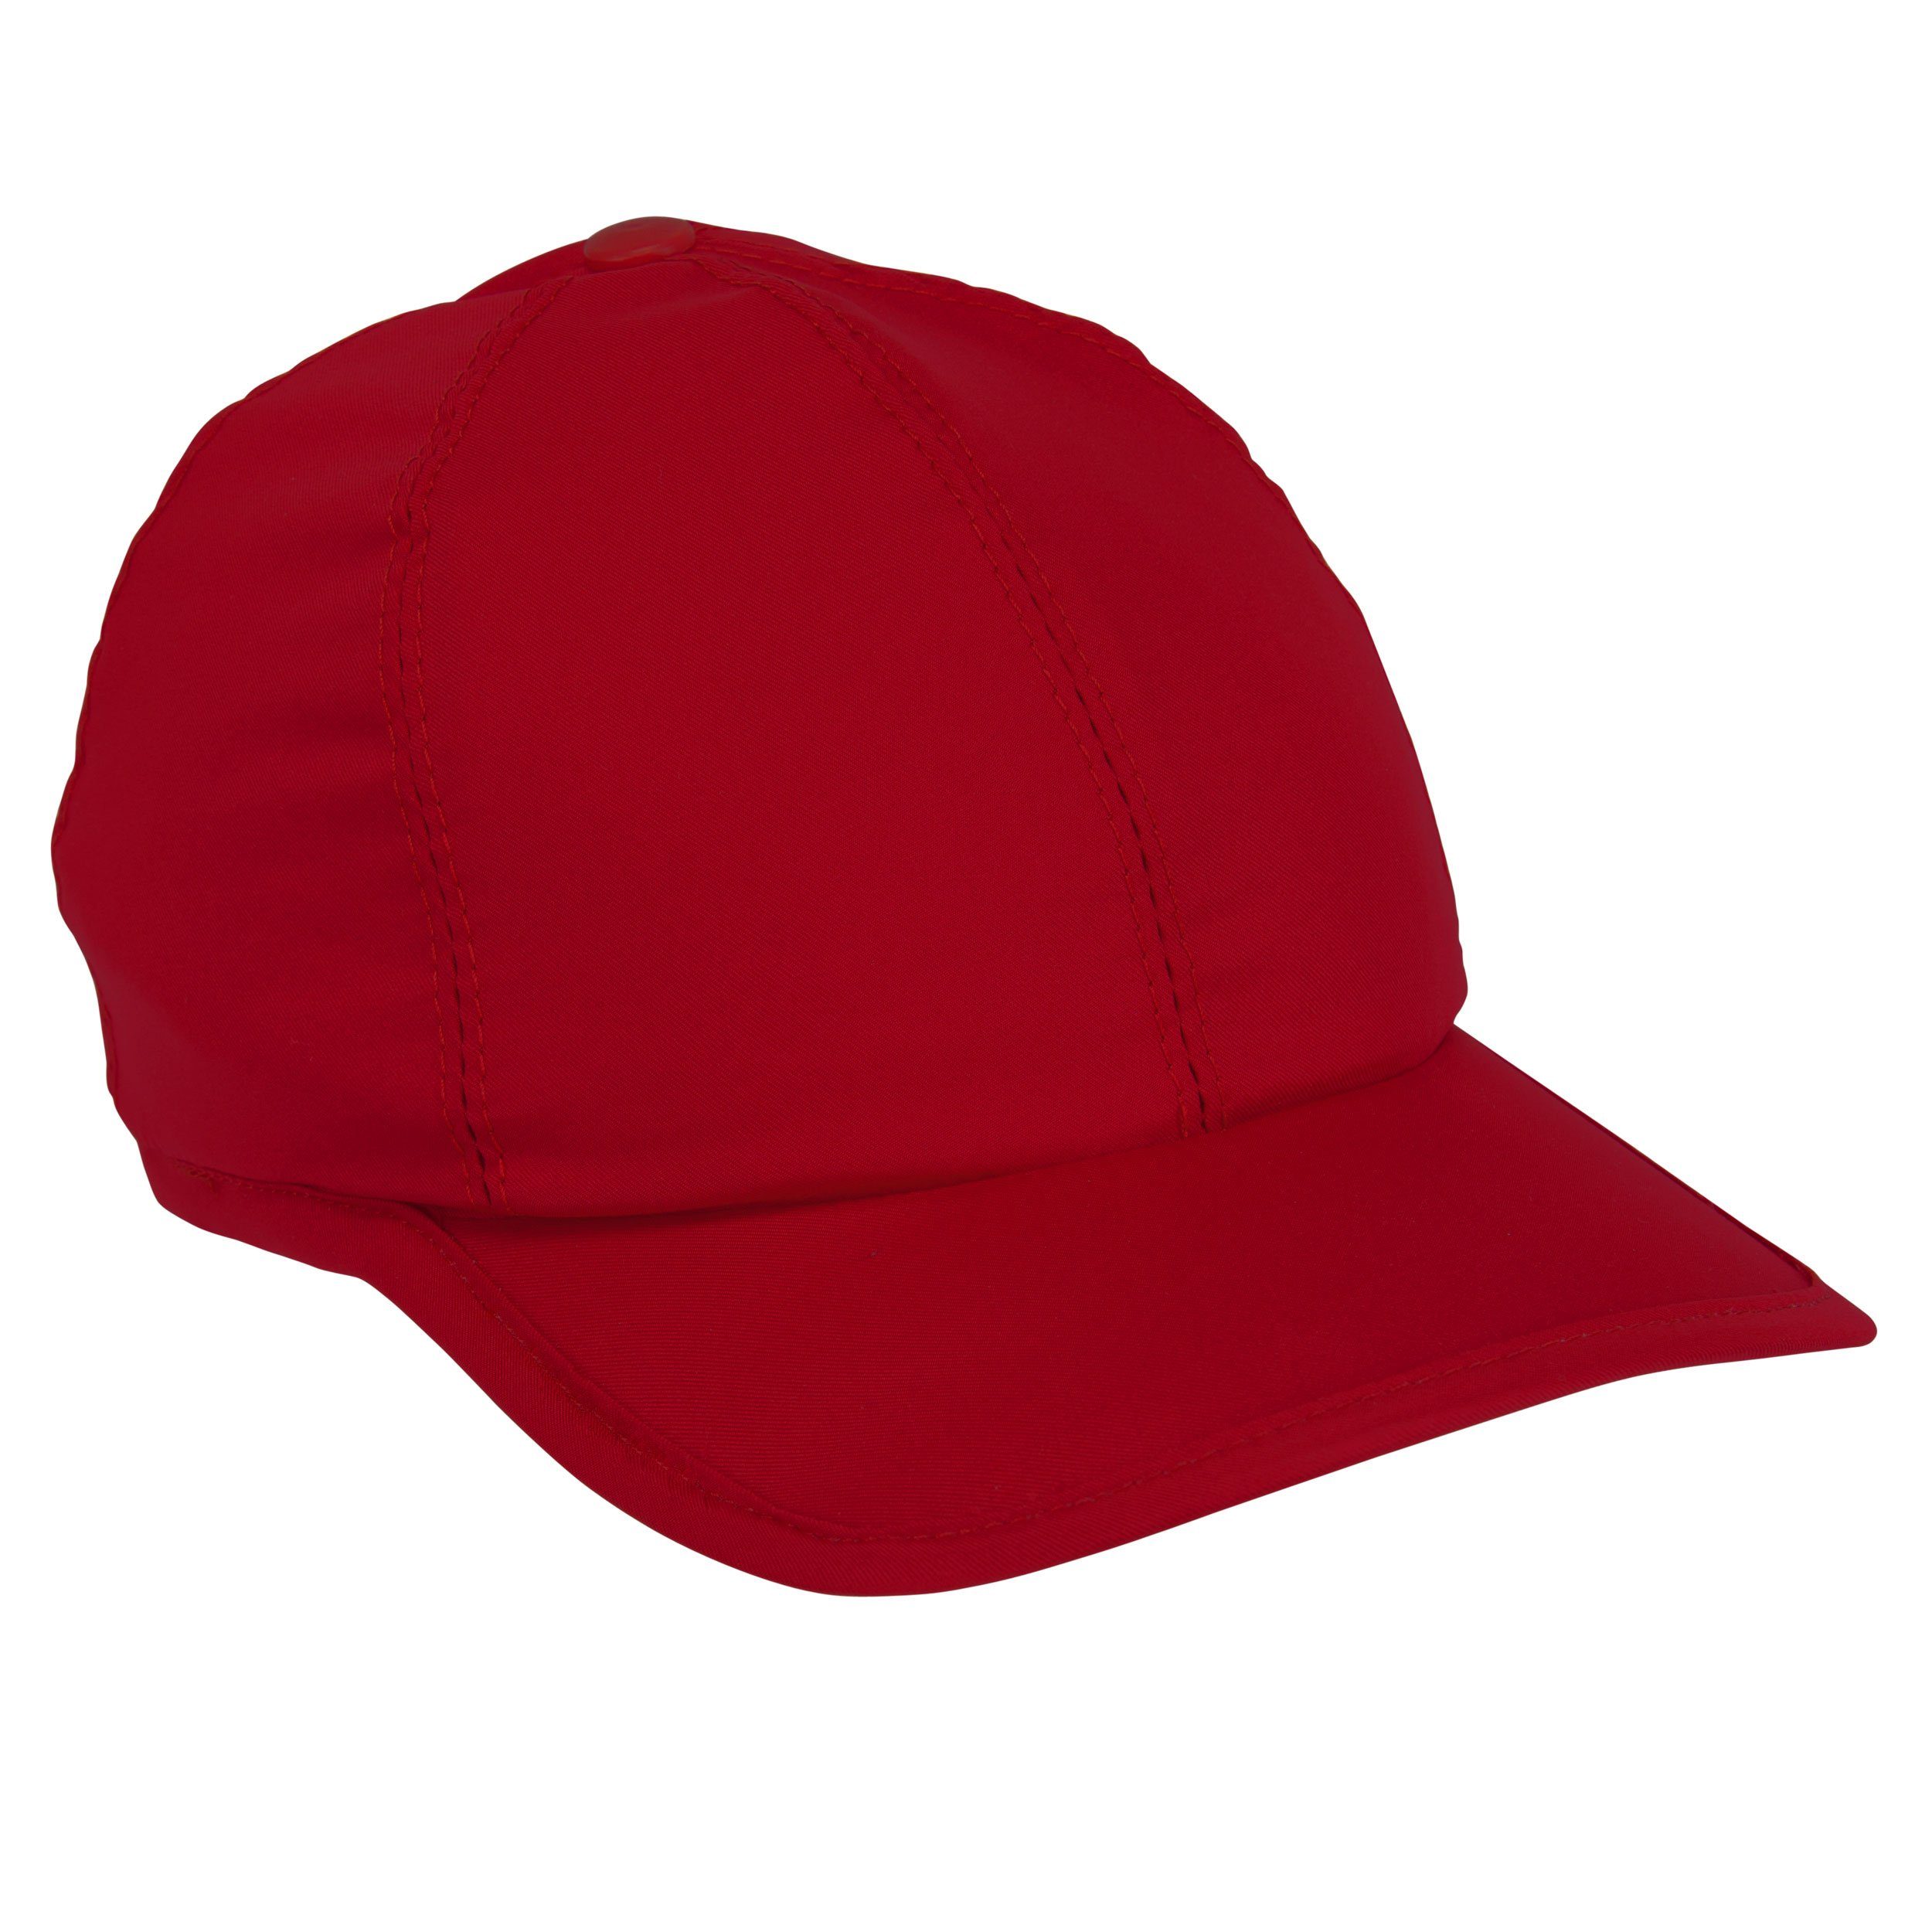 E.COOLINE Baseball Cap - aktiv kühlende Mütze - Kühlung durch Aktivierung mit Wasser Klimaanlage zum Anziehen Rot